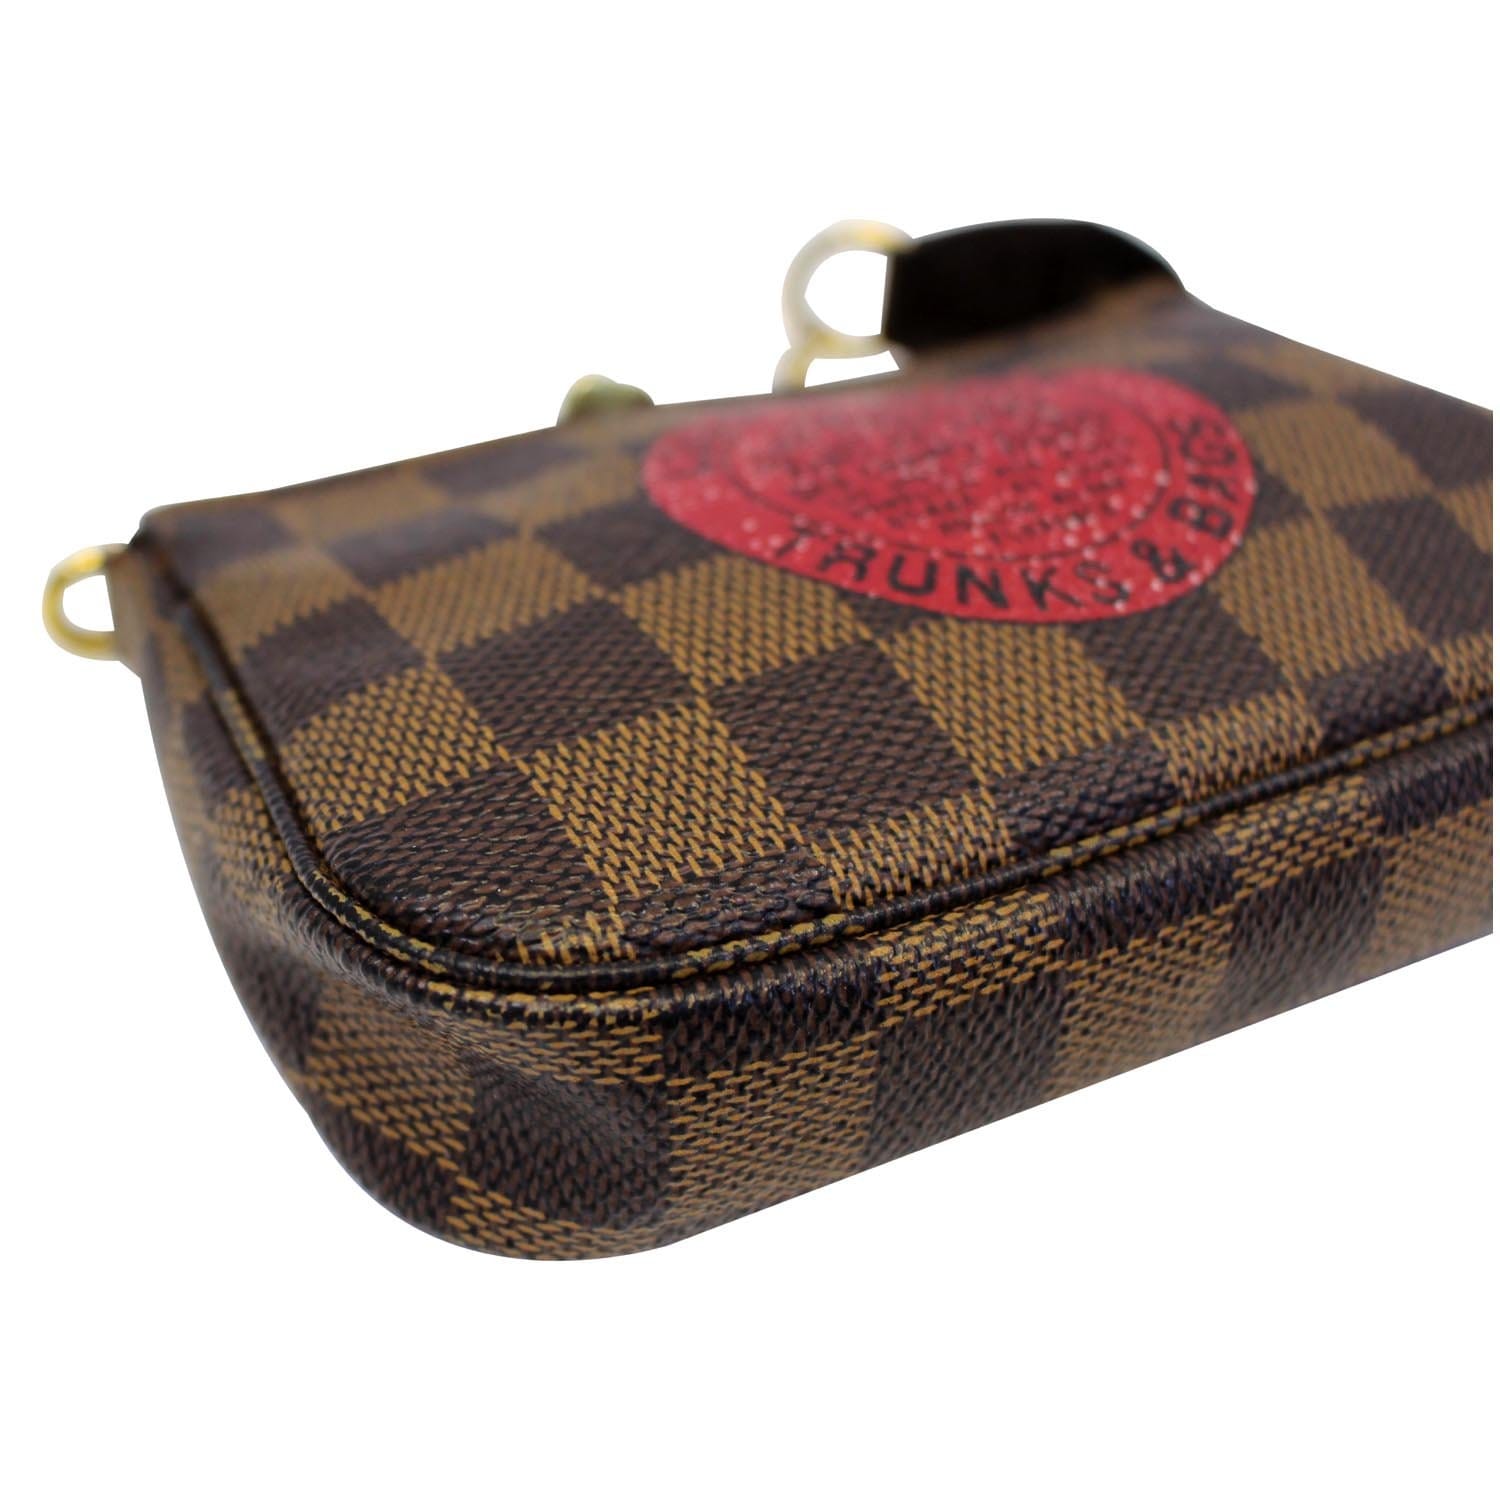 Louis Vuitton Damier Ebène Mini Trunk Labels Handbag